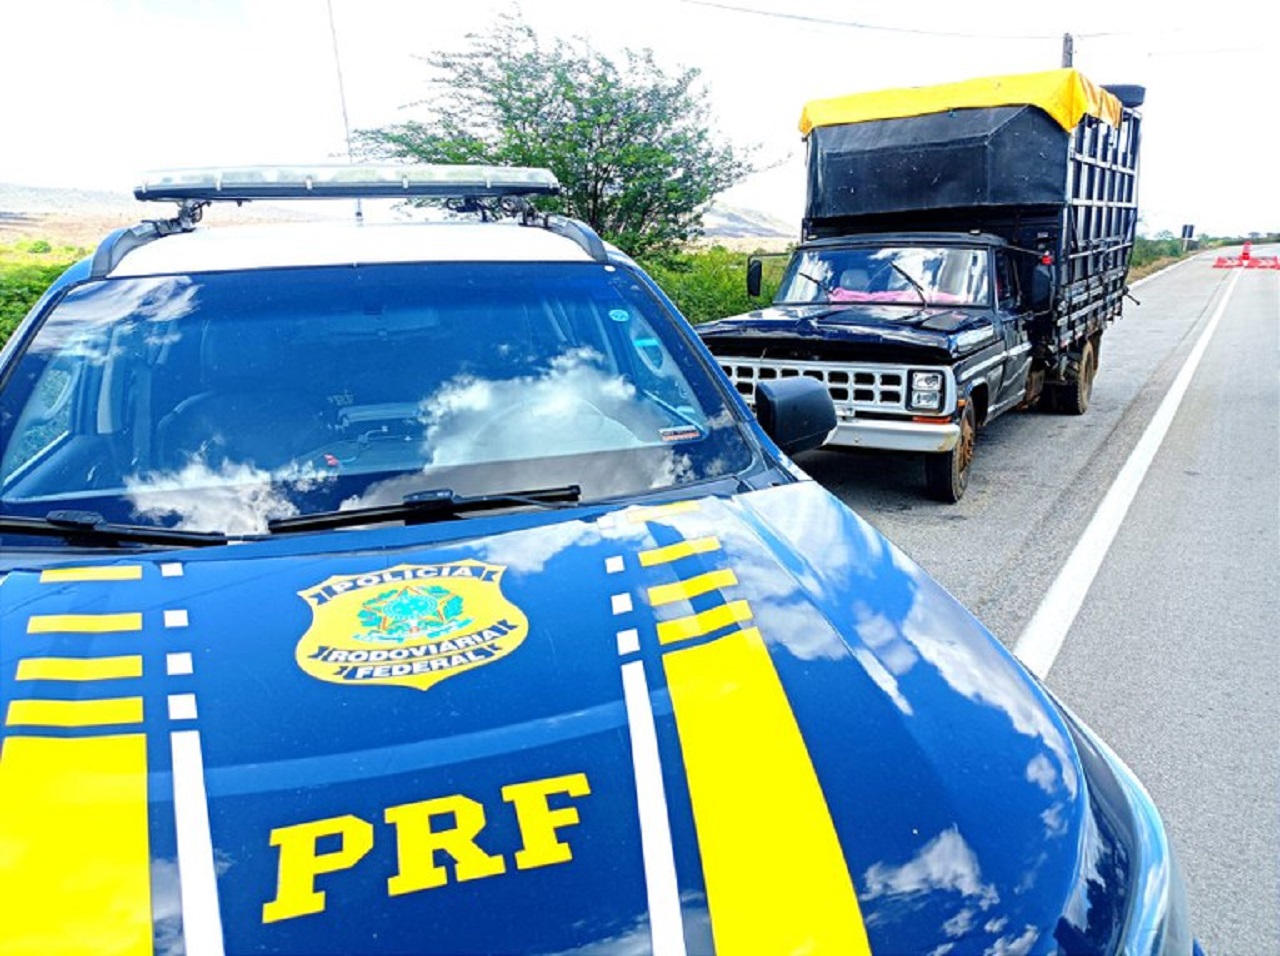 Condutor surpreendido: PRF recupera caminhonete com restrição de furto